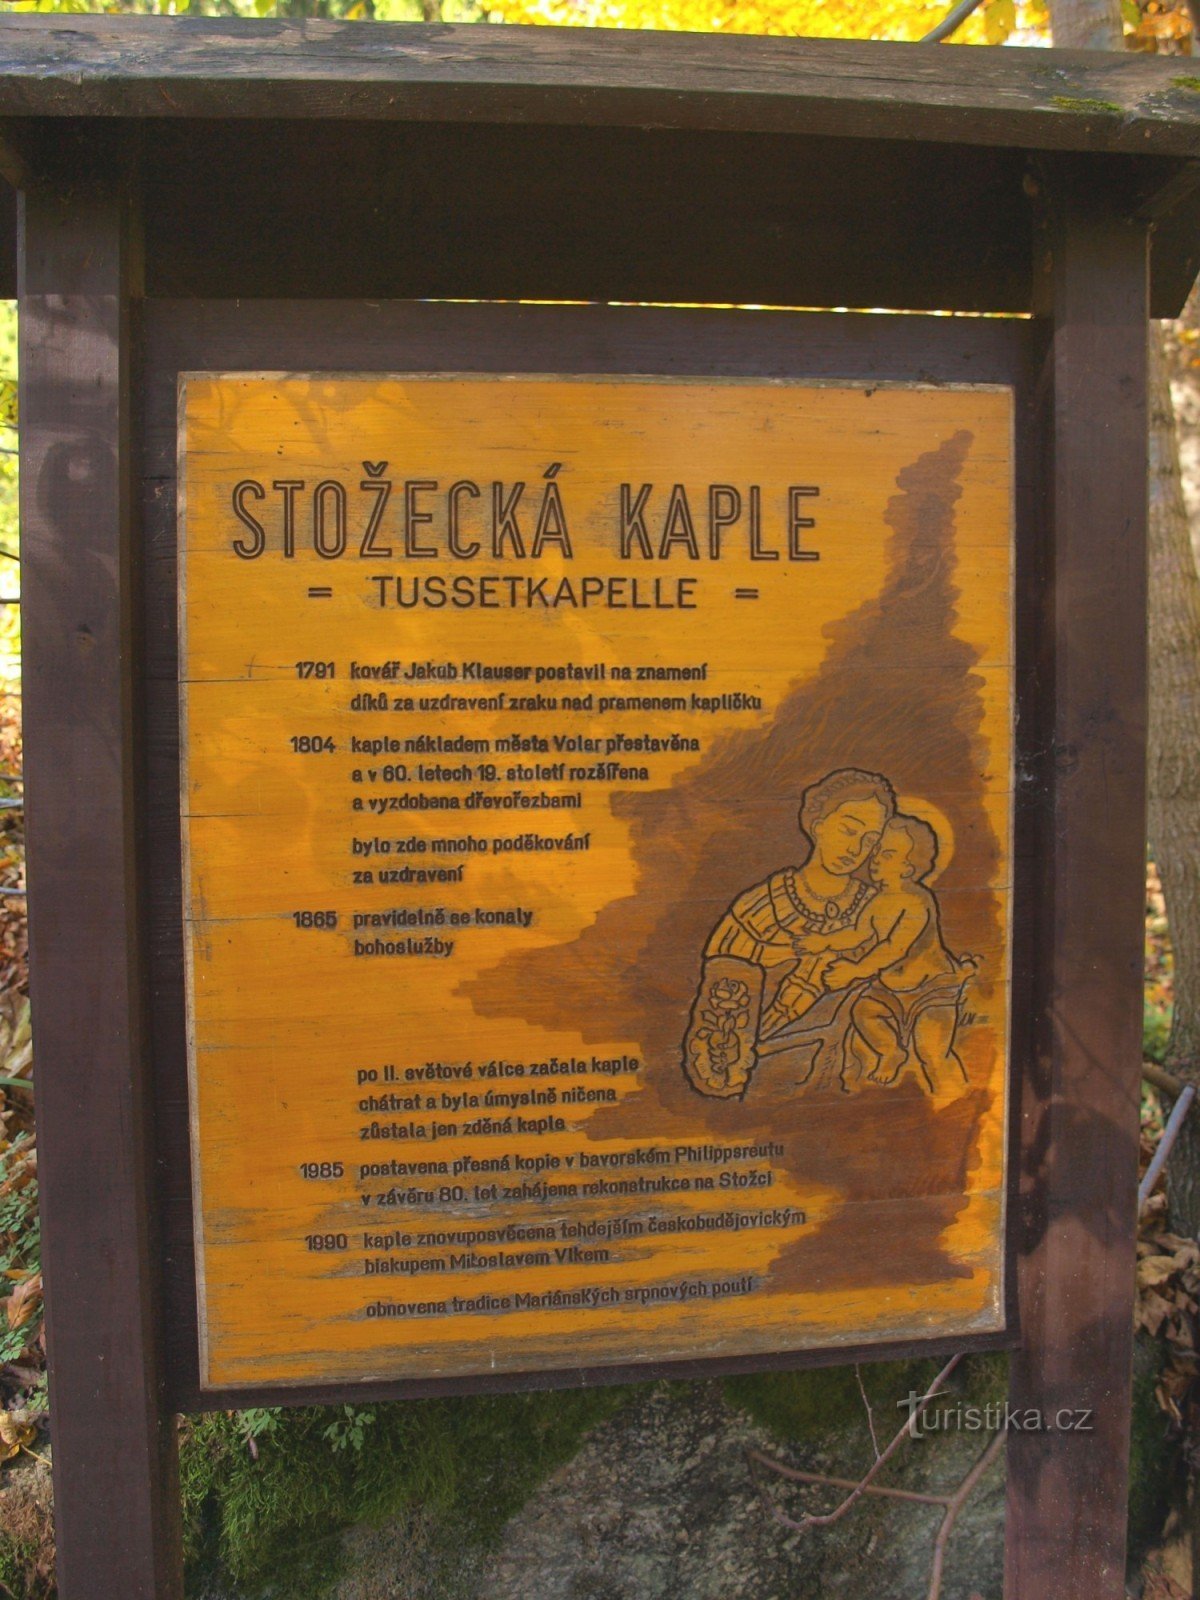 Tablero de información quemado en la Capilla Stožecka